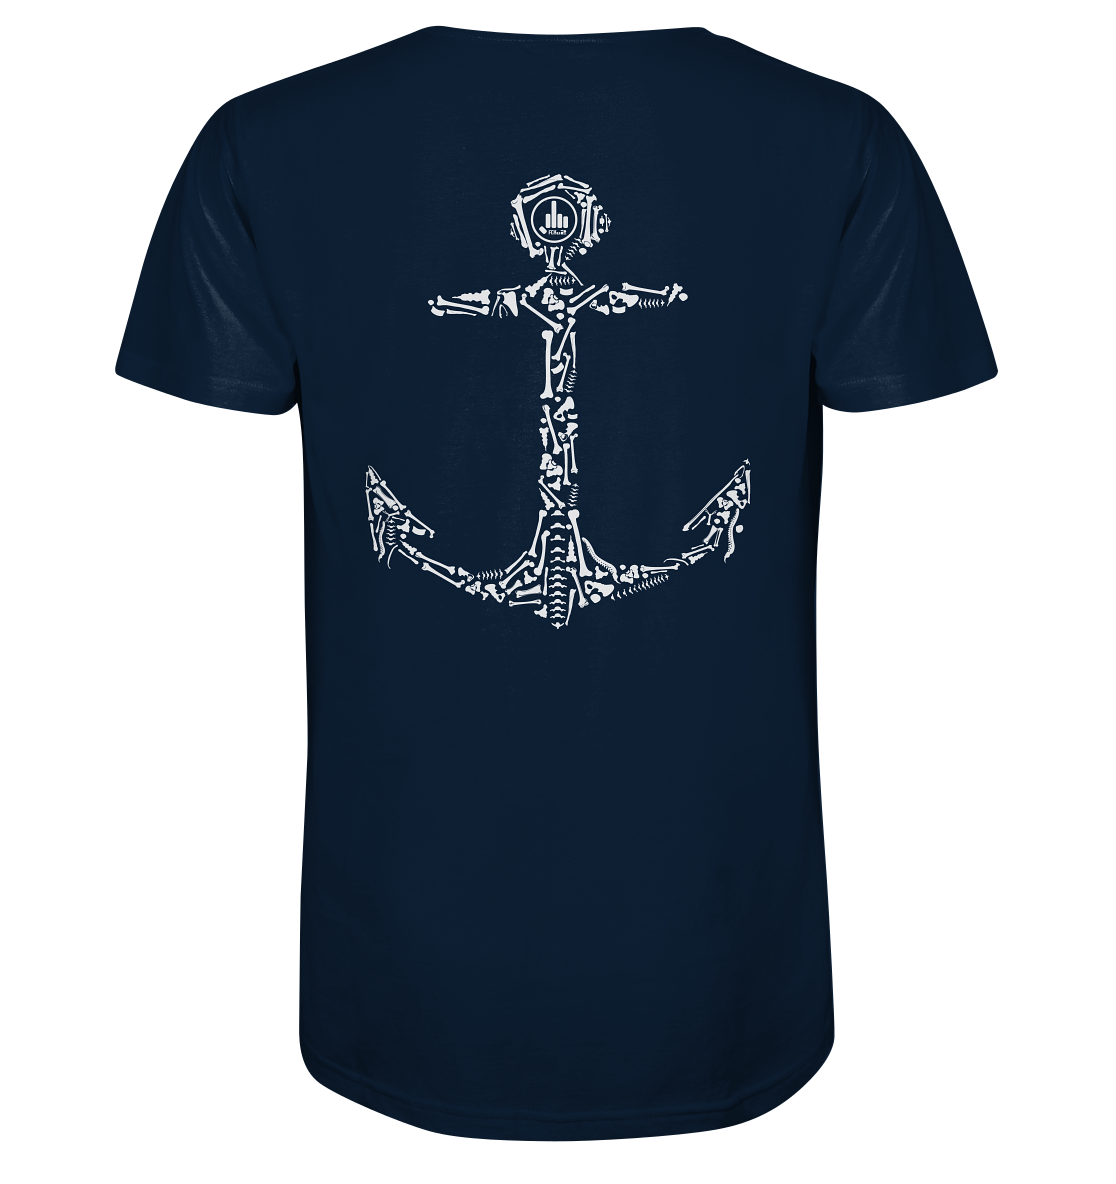 Anchor - Organic Shirt - fcku2-clothing-DE